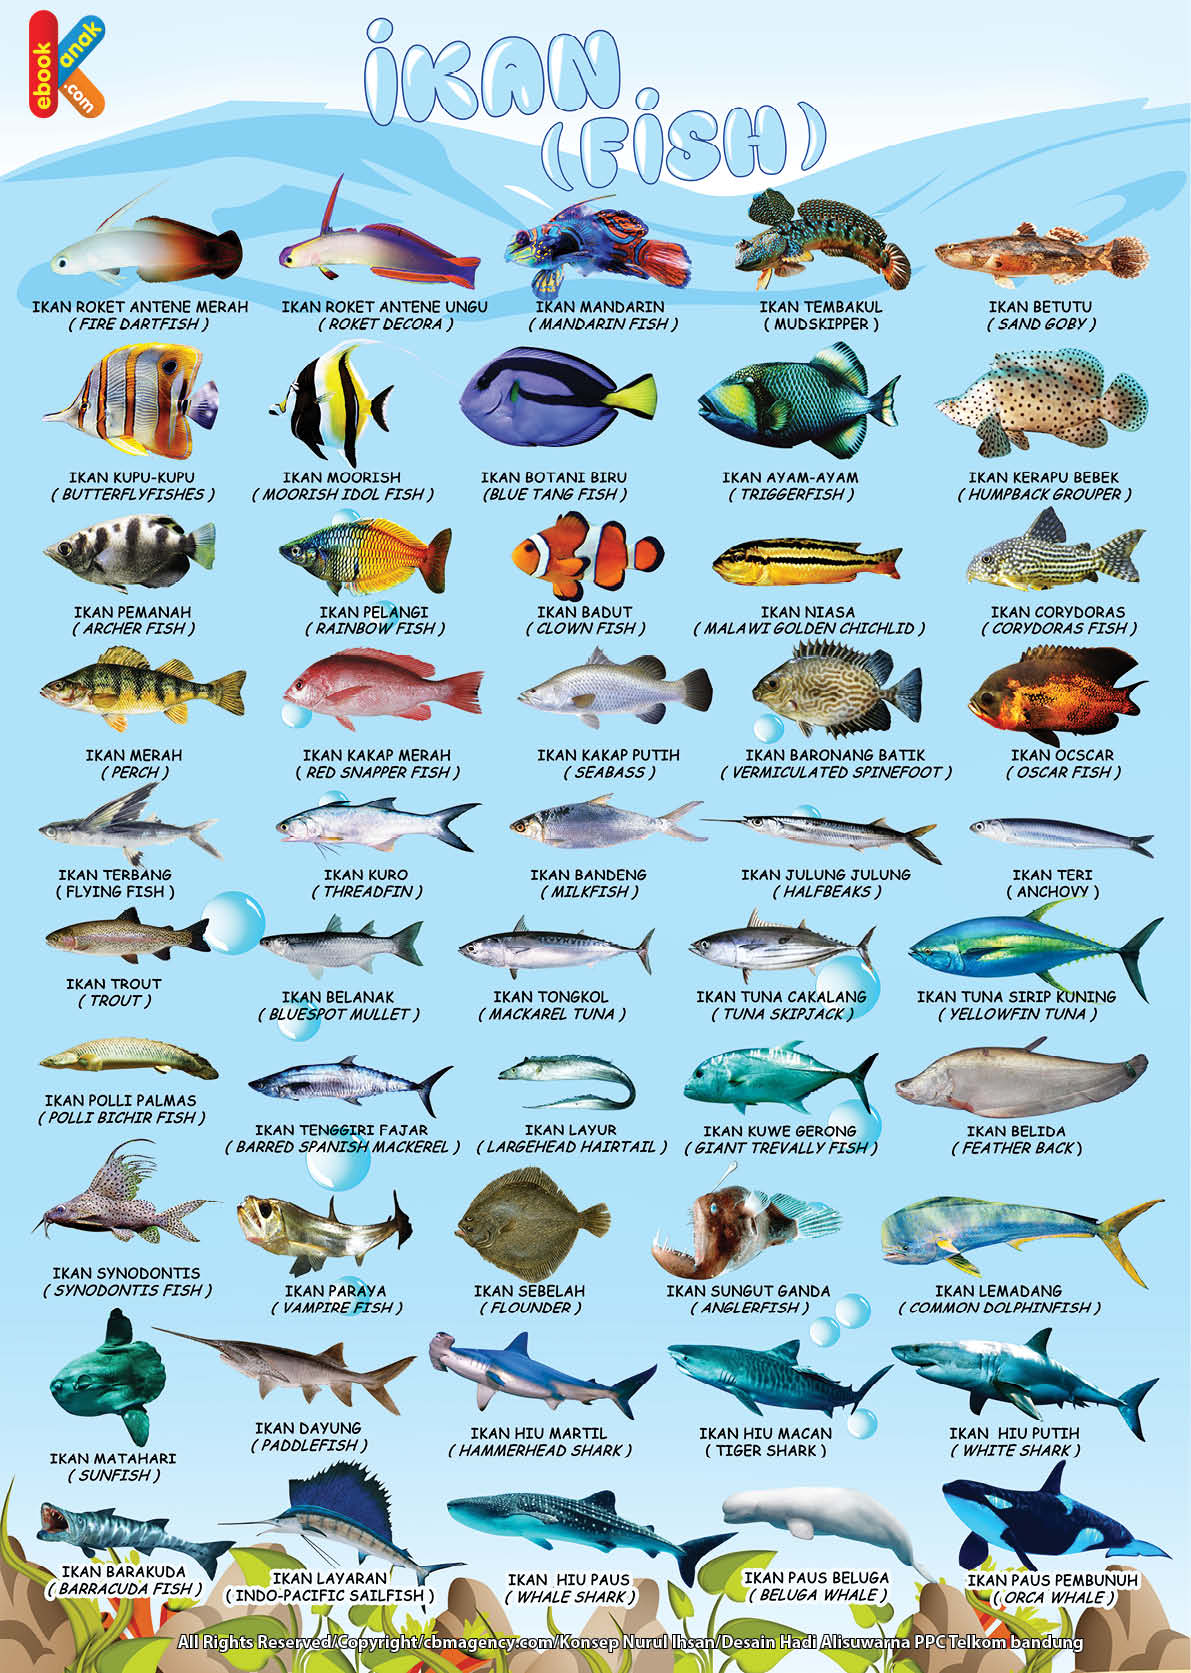 gratis poster mengenal 50 ikan bilingual bahasa indonesia inggris